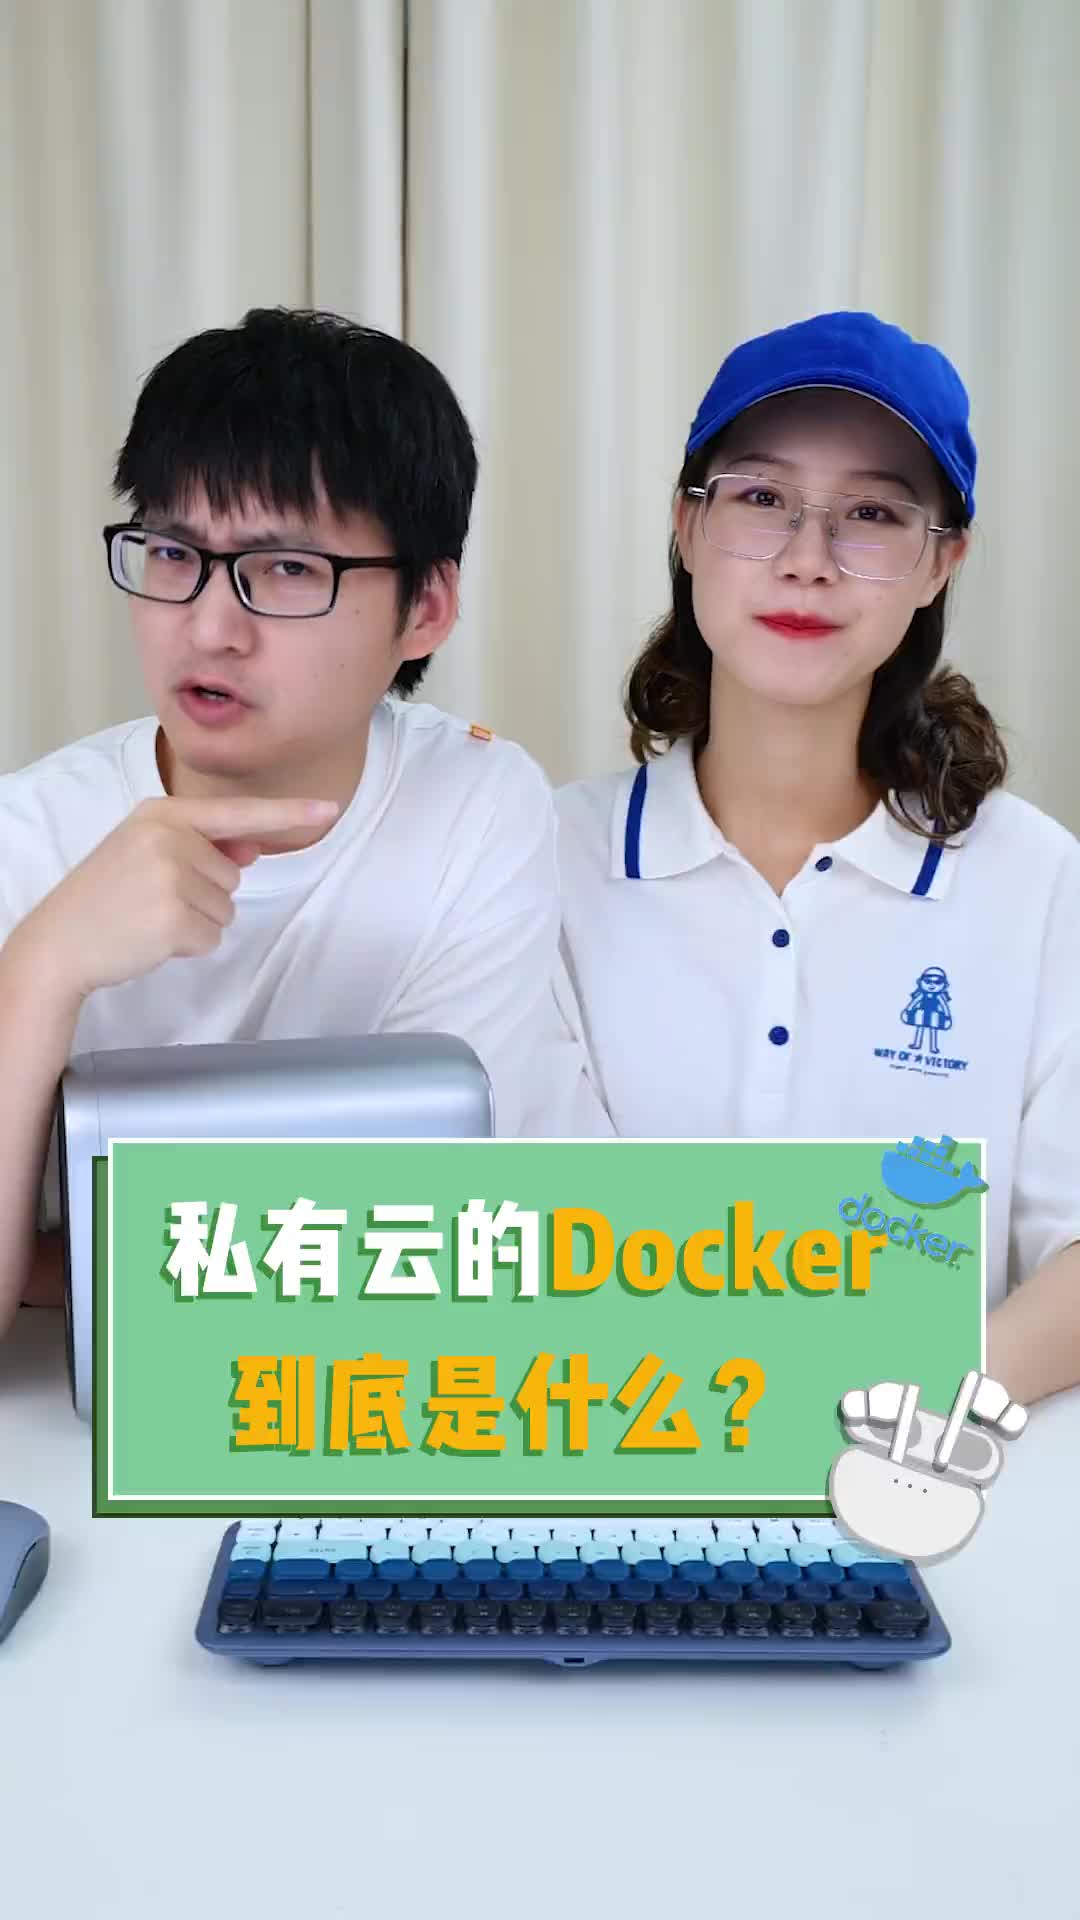 #云计算 #私有云 绿联私有云有docker功能了！你会玩docker吗？